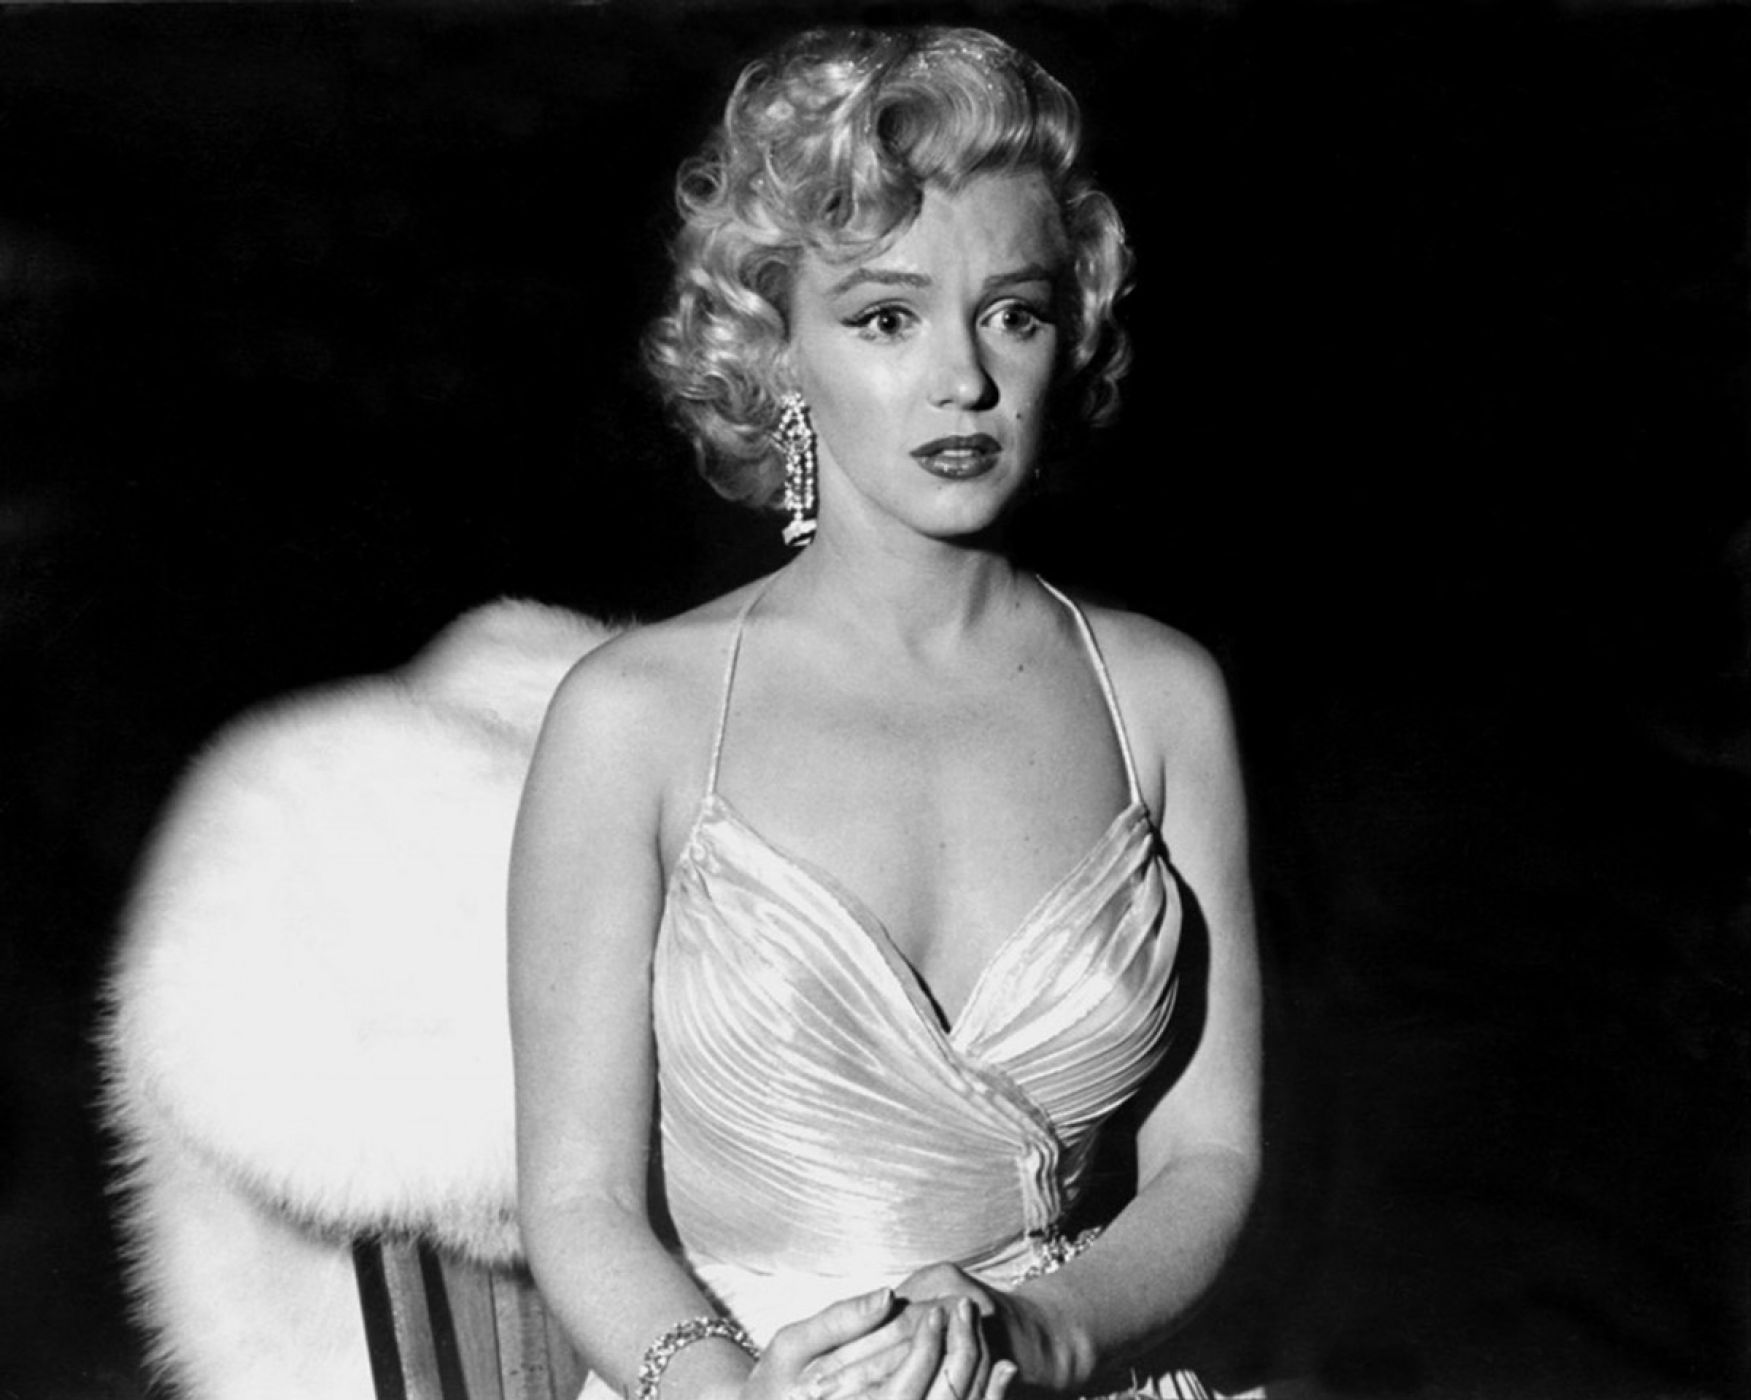 Phil Stern, “Marilyn Monroe, Los Angeles”, 1953